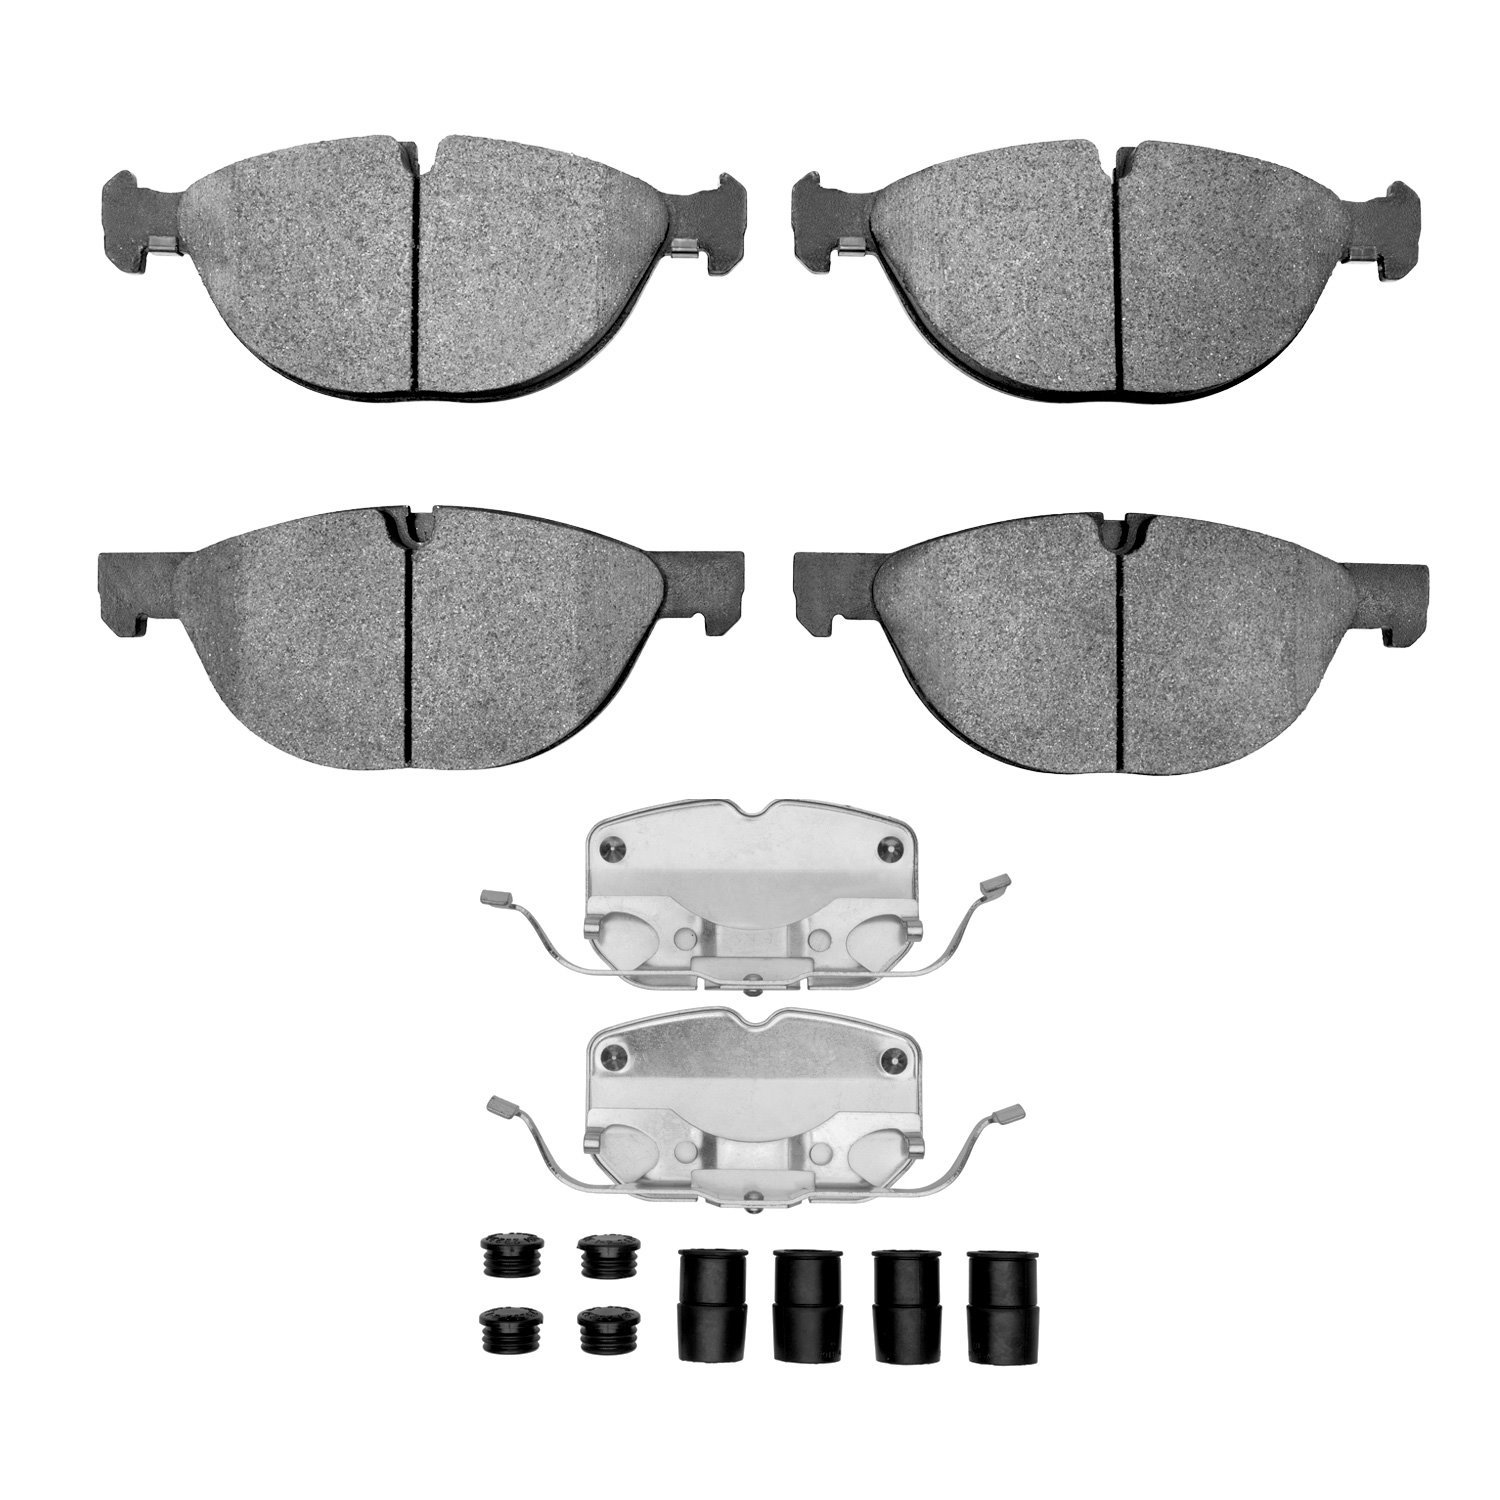 1310-1381-01 3000-Series Ceramic Brake Pads & Hardware Kit, 2008-2019 BMW, Position: Front